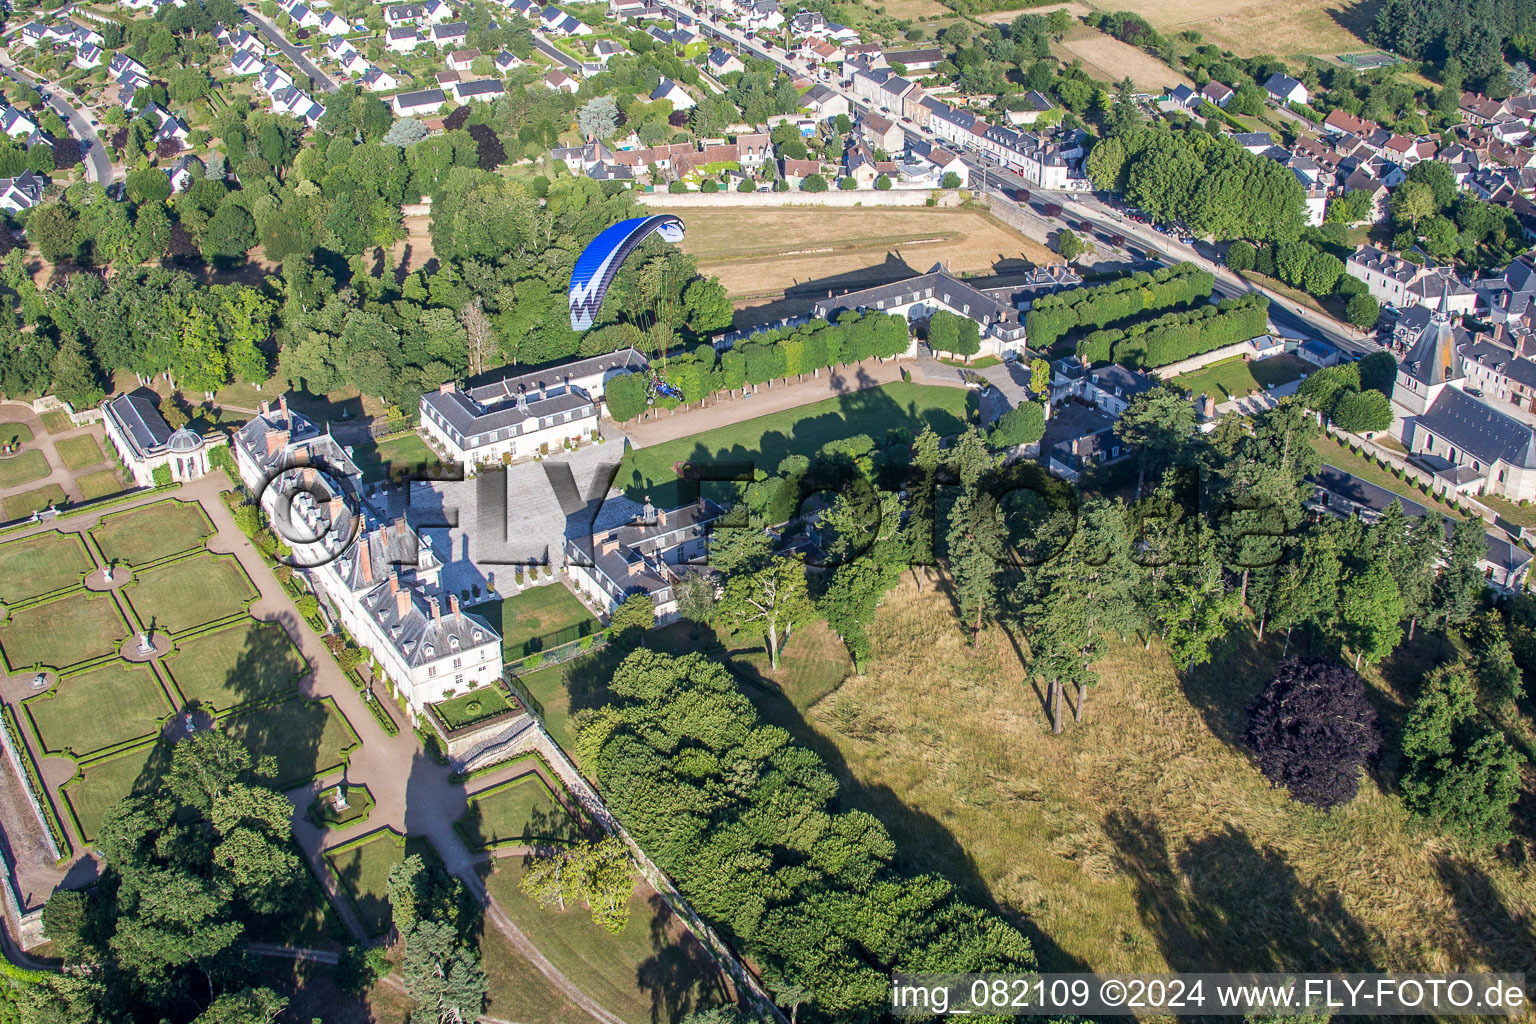 Vue aérienne de Parc du Palais de la Fondation du Palais Pompadour à Menars dans le département Loir et Cher, France